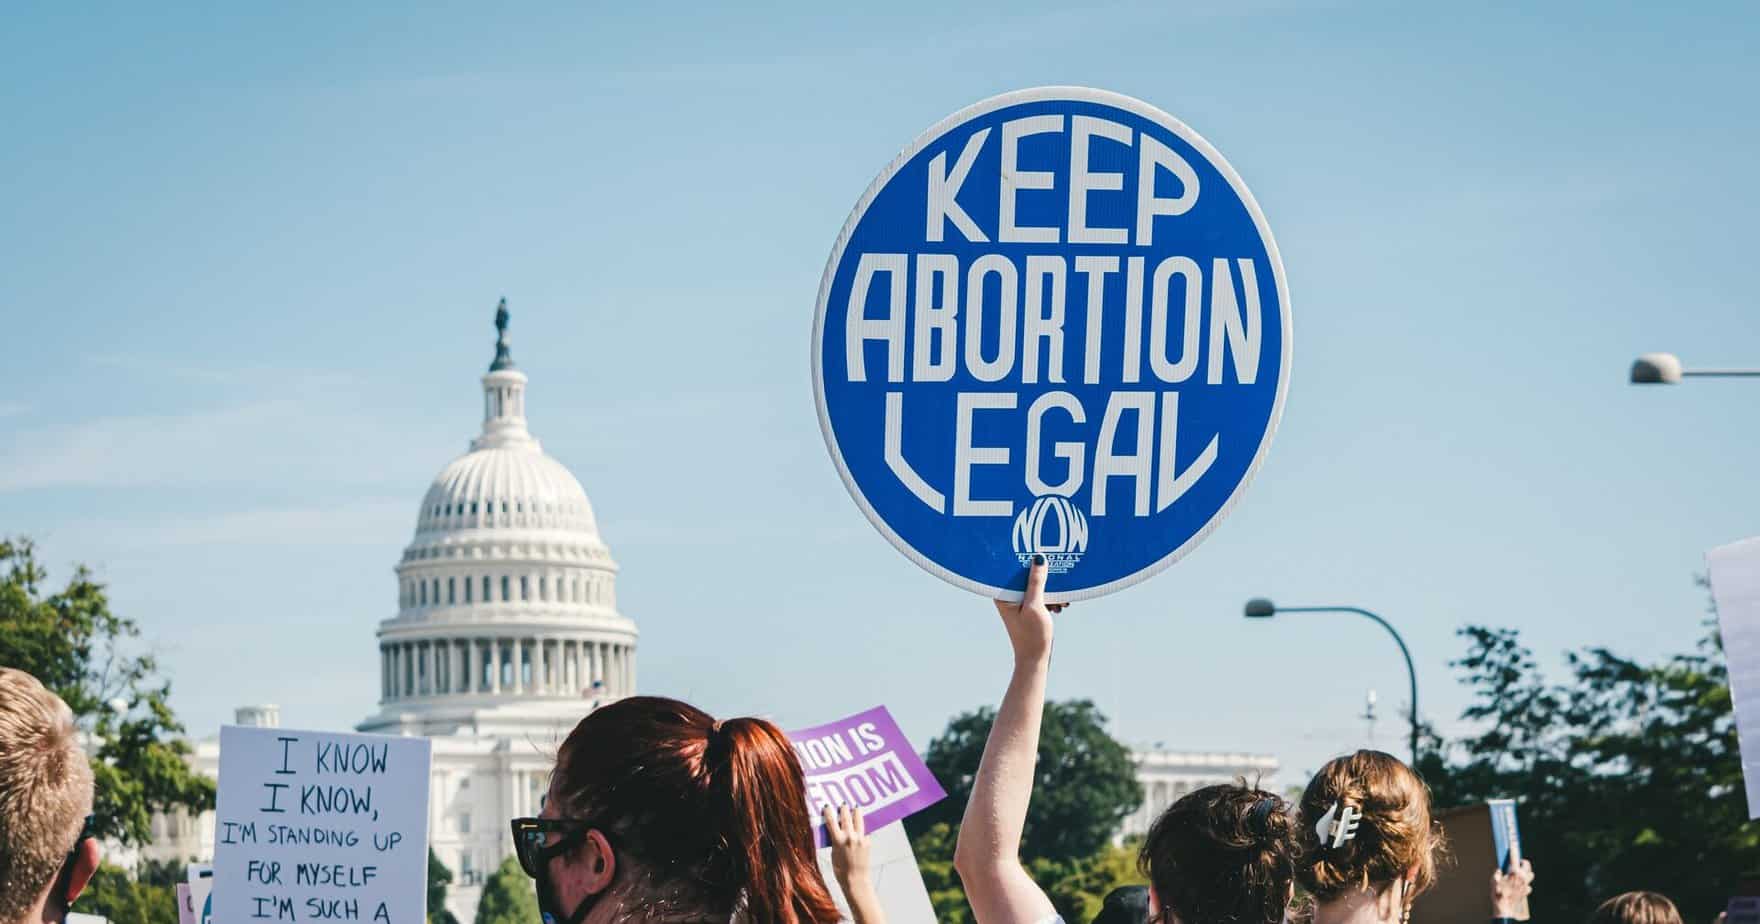 ארצות הברית מבטלת את הזכות להפסקת היריון